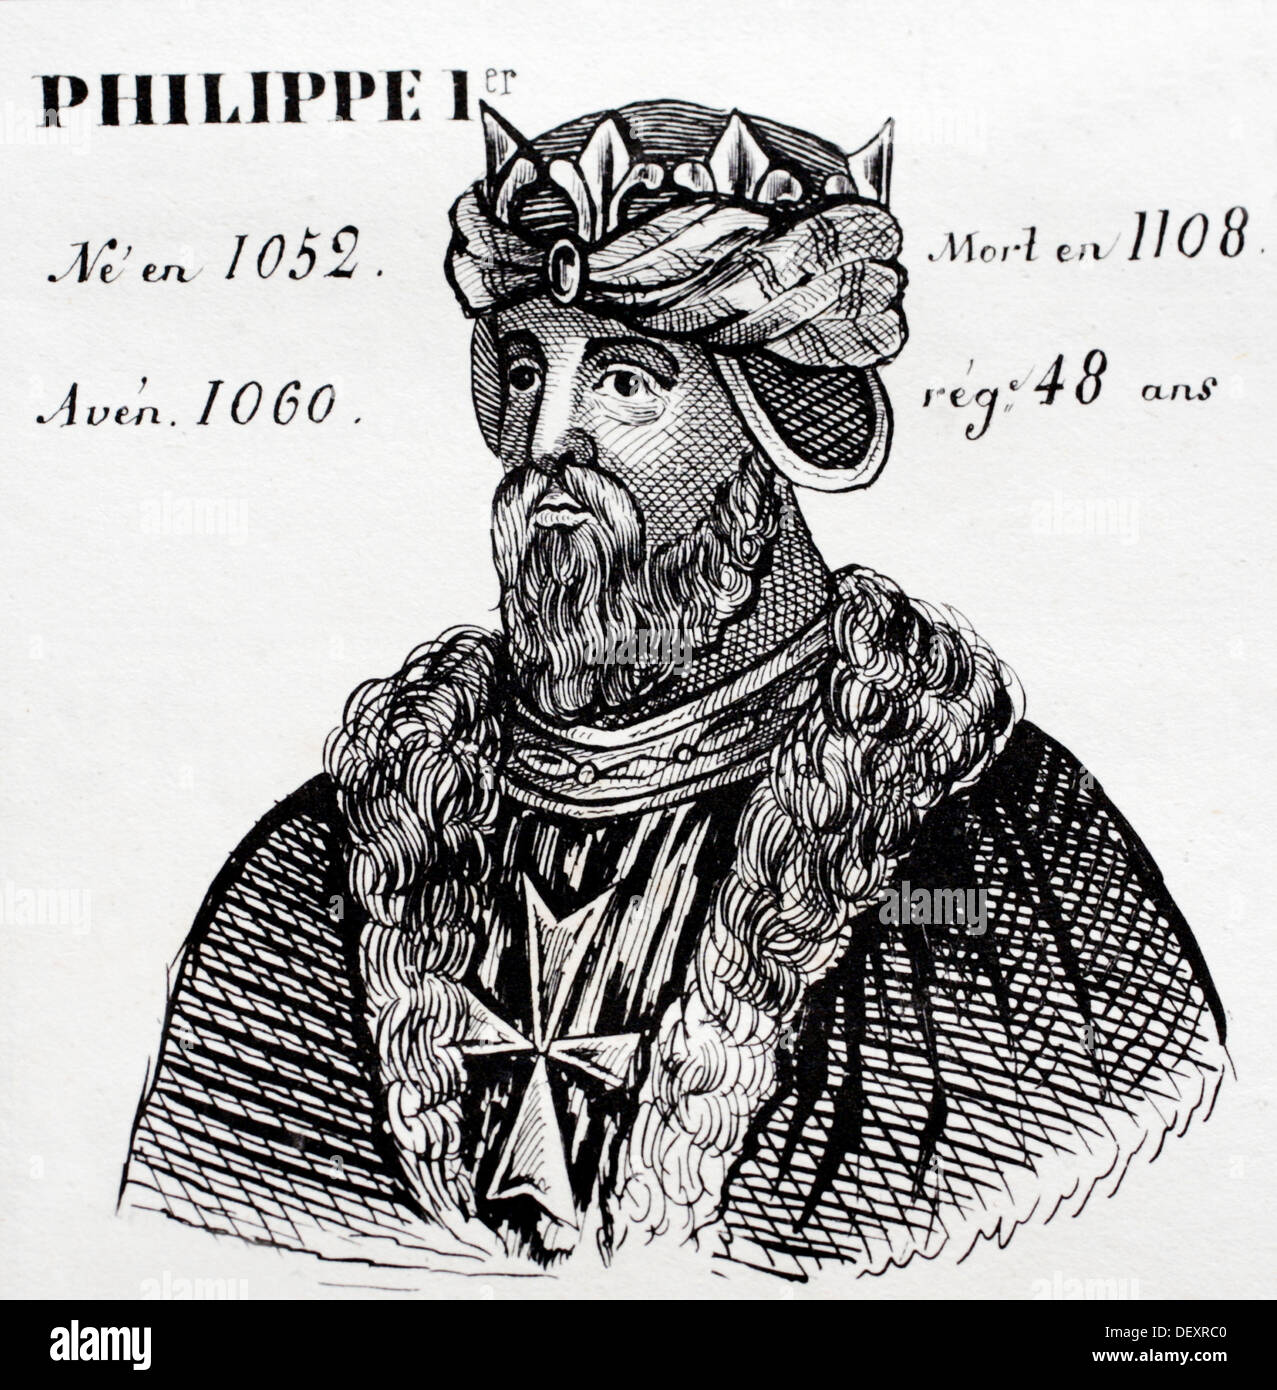 Philippe 1st., rey de Francia desde 1060 a 1108. Historia de Francia, por J.Henry (París, 1842) Foto de stock